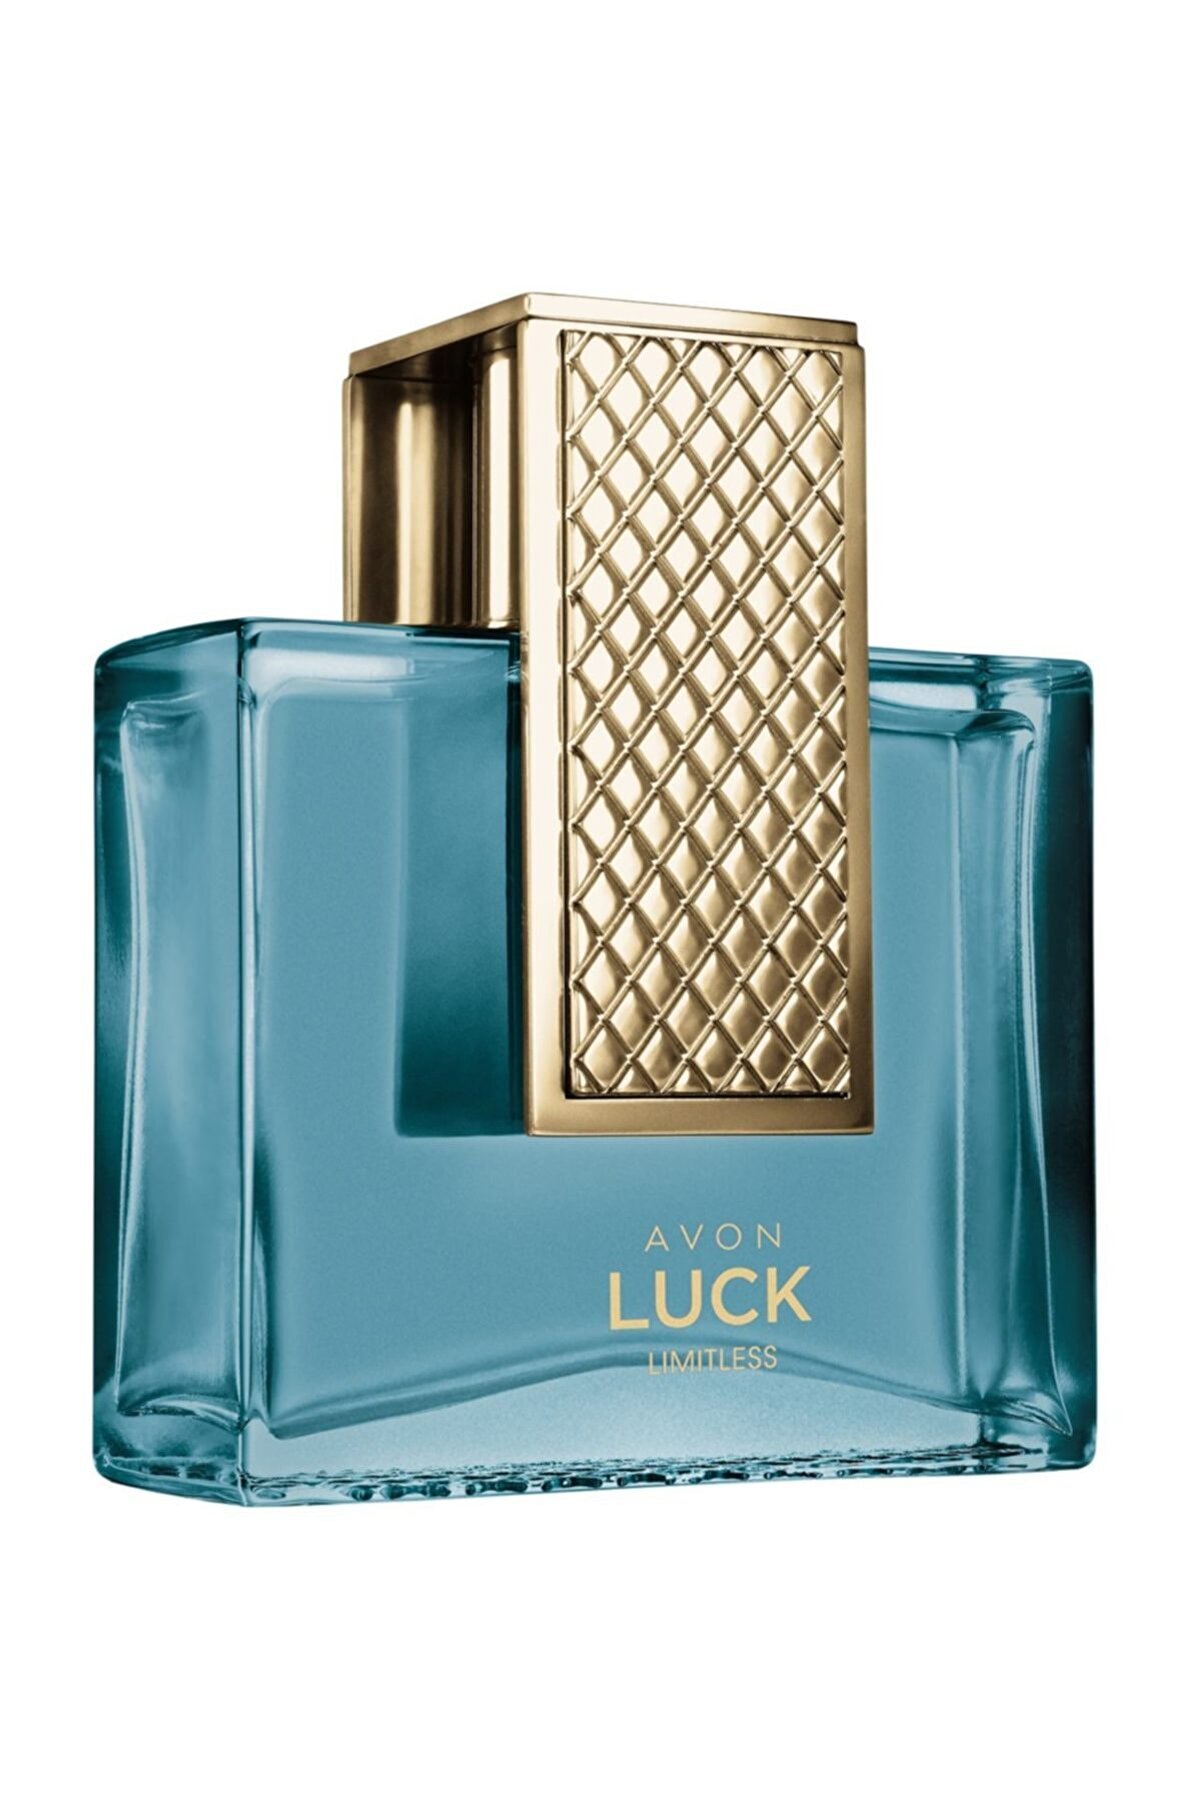 Avon Luck Limitless Edt 75 Ml Erkek Parfümü 5050136196325